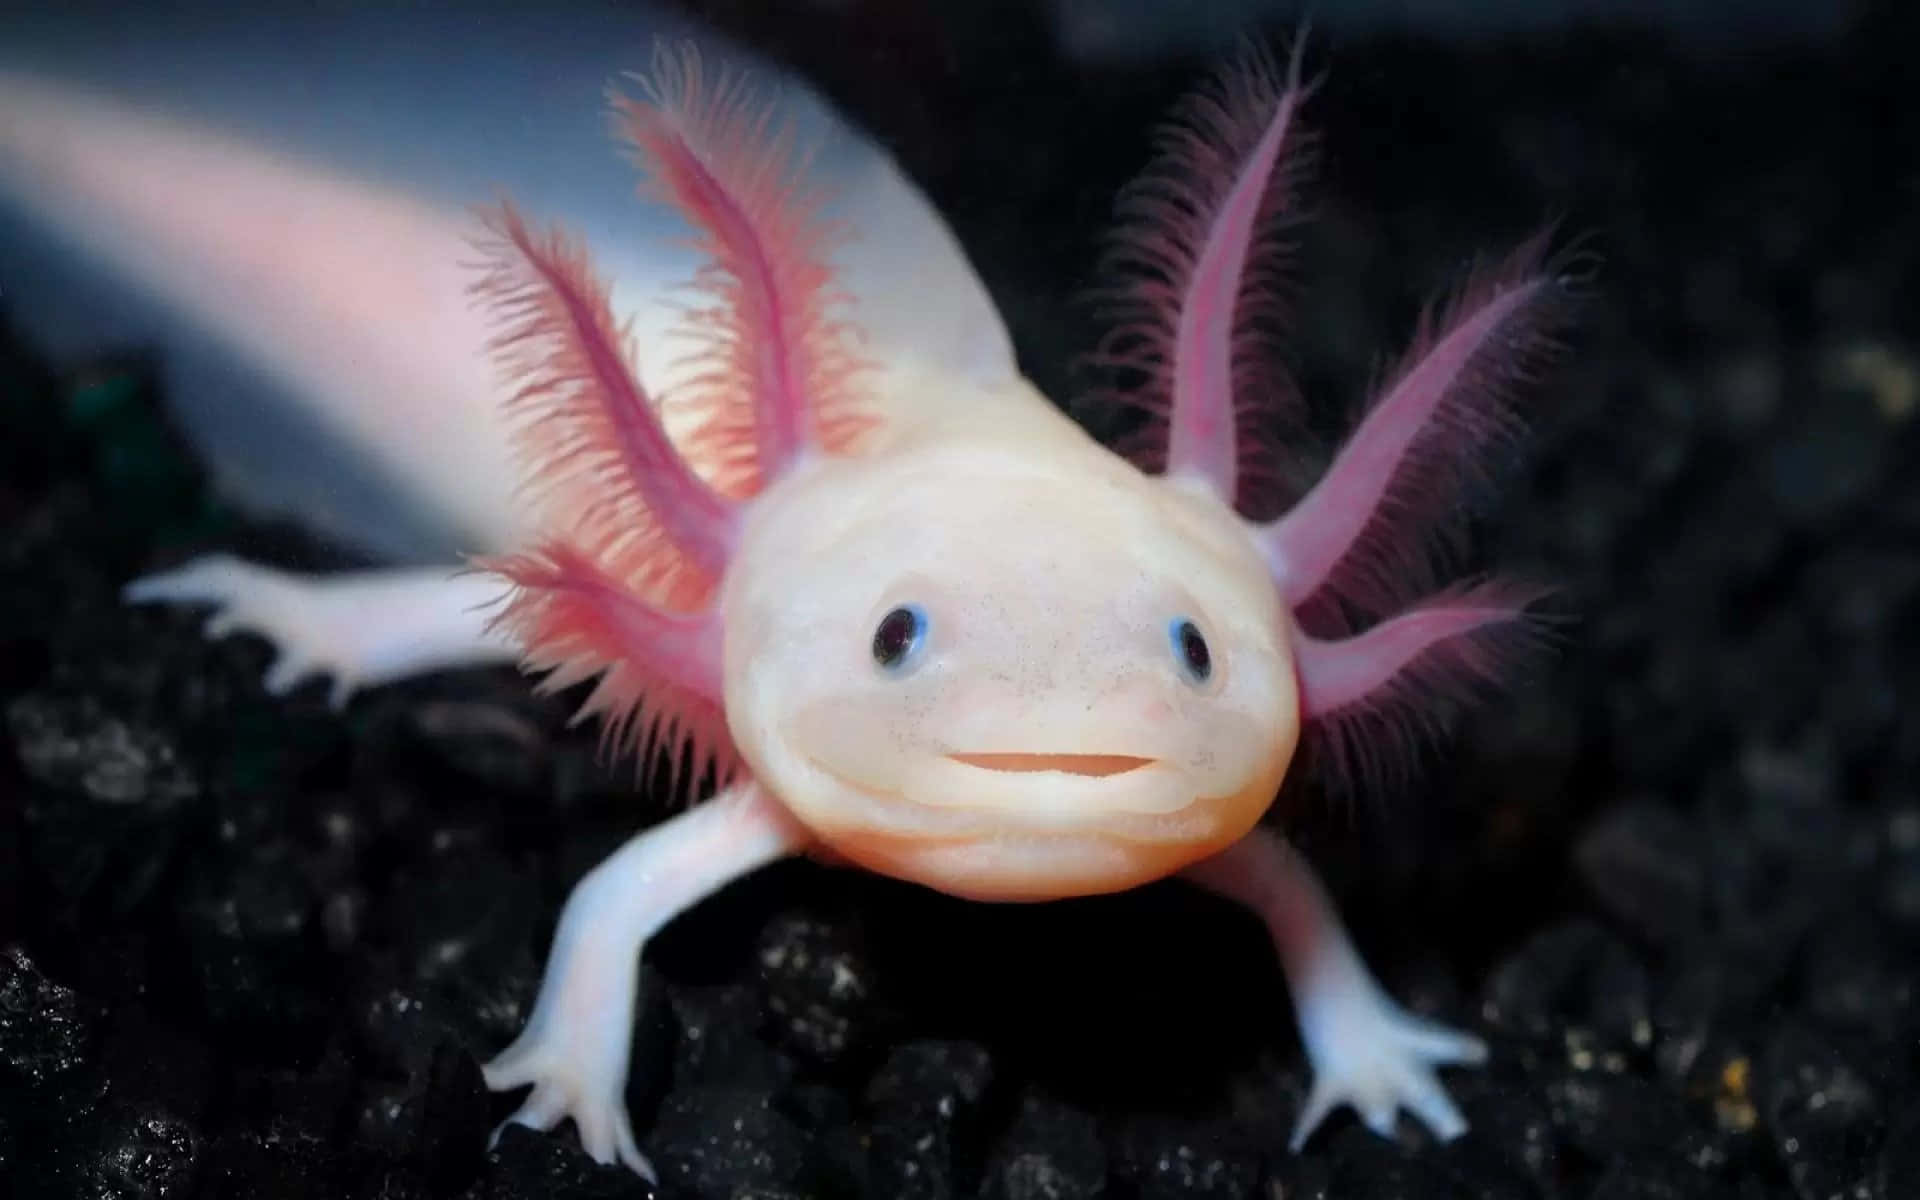 An adorable axolotl taking a break!